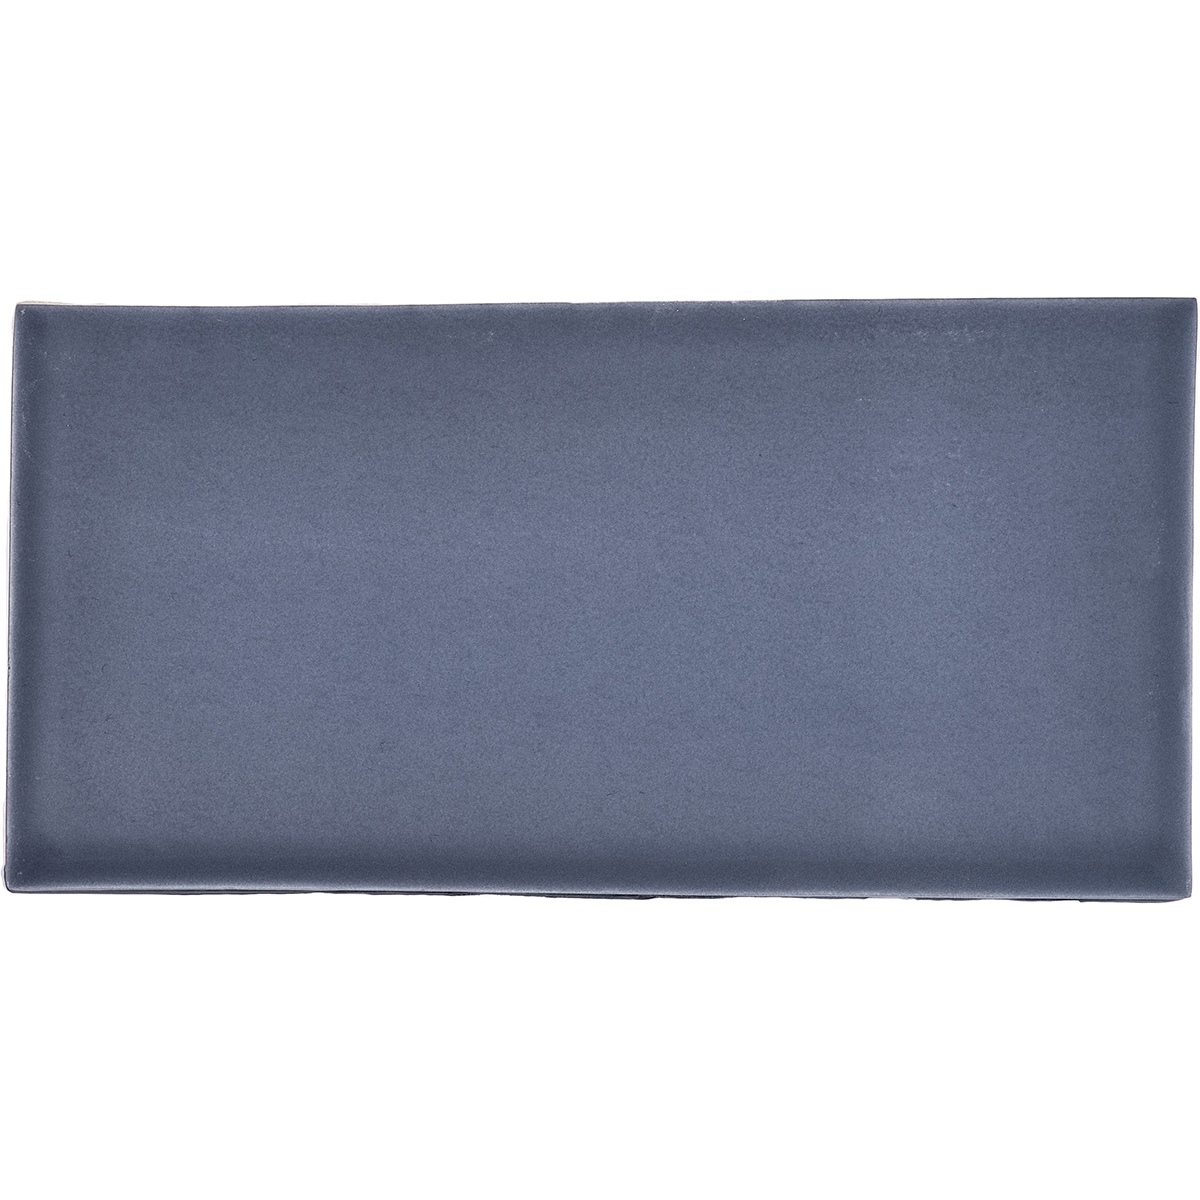 Slate Blue Medium Brick, product variant image